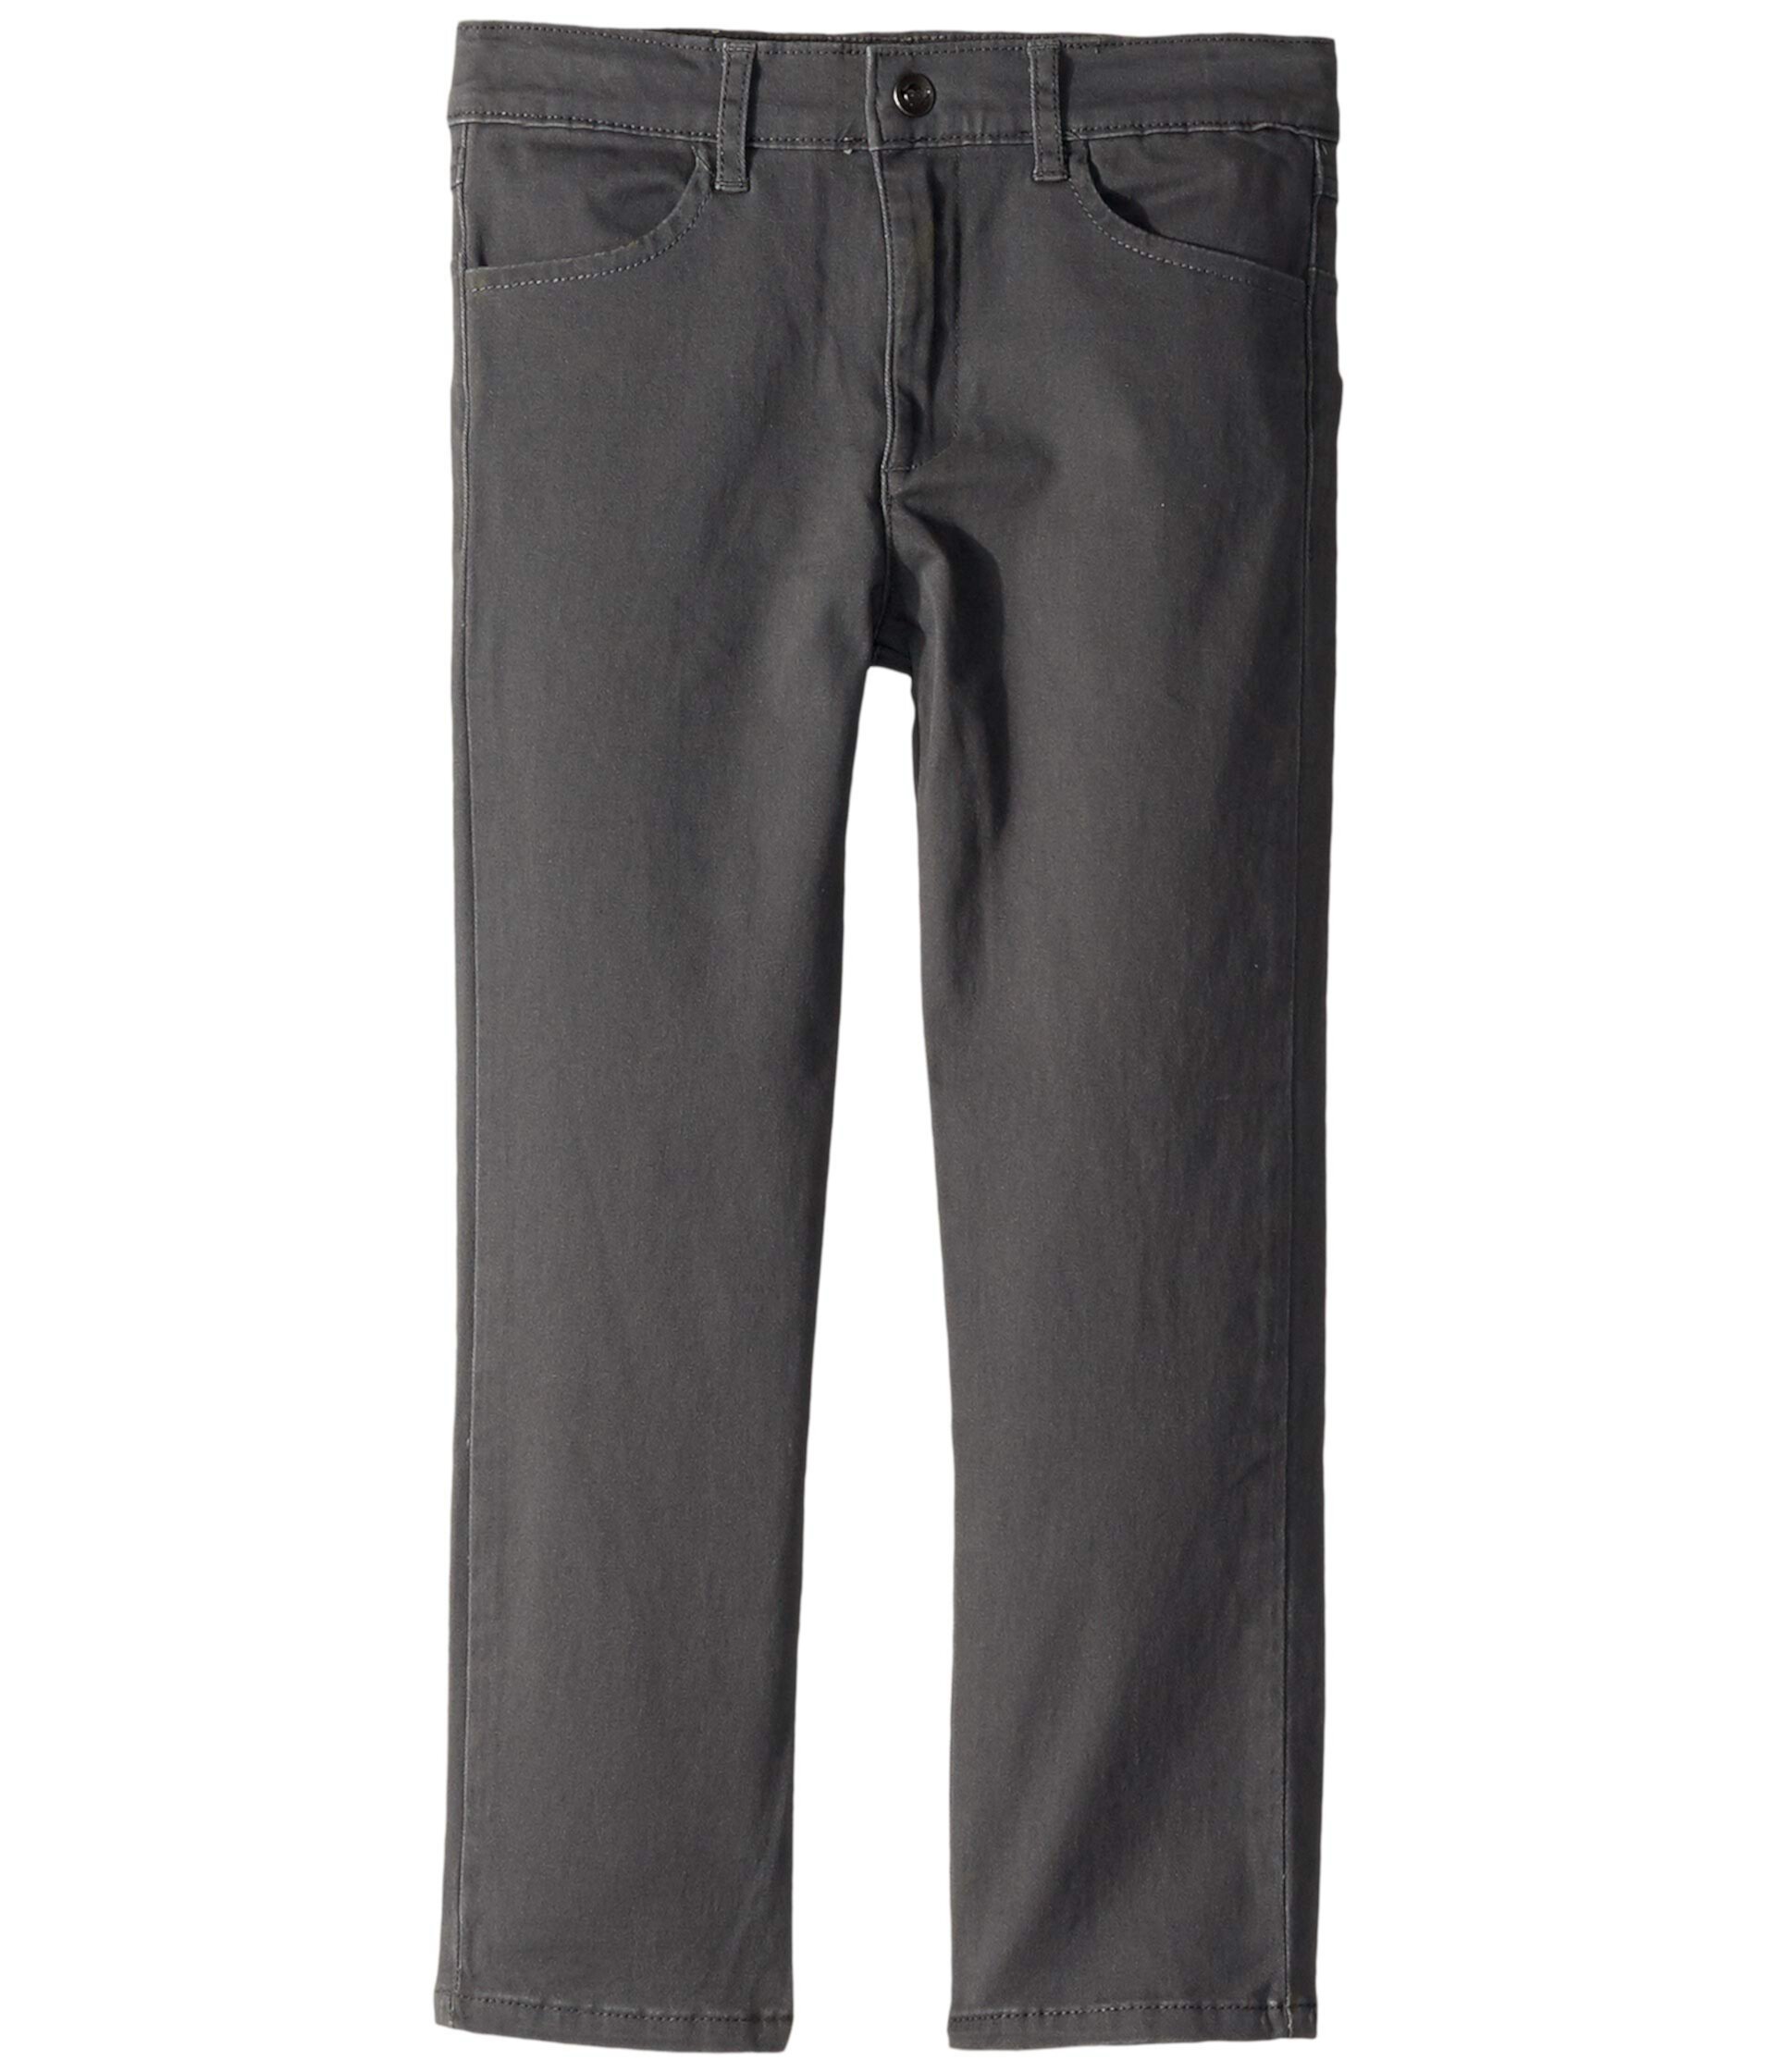 Узкие брюки из твила (для малышей / маленьких детей / детей старшего возраста) Appaman